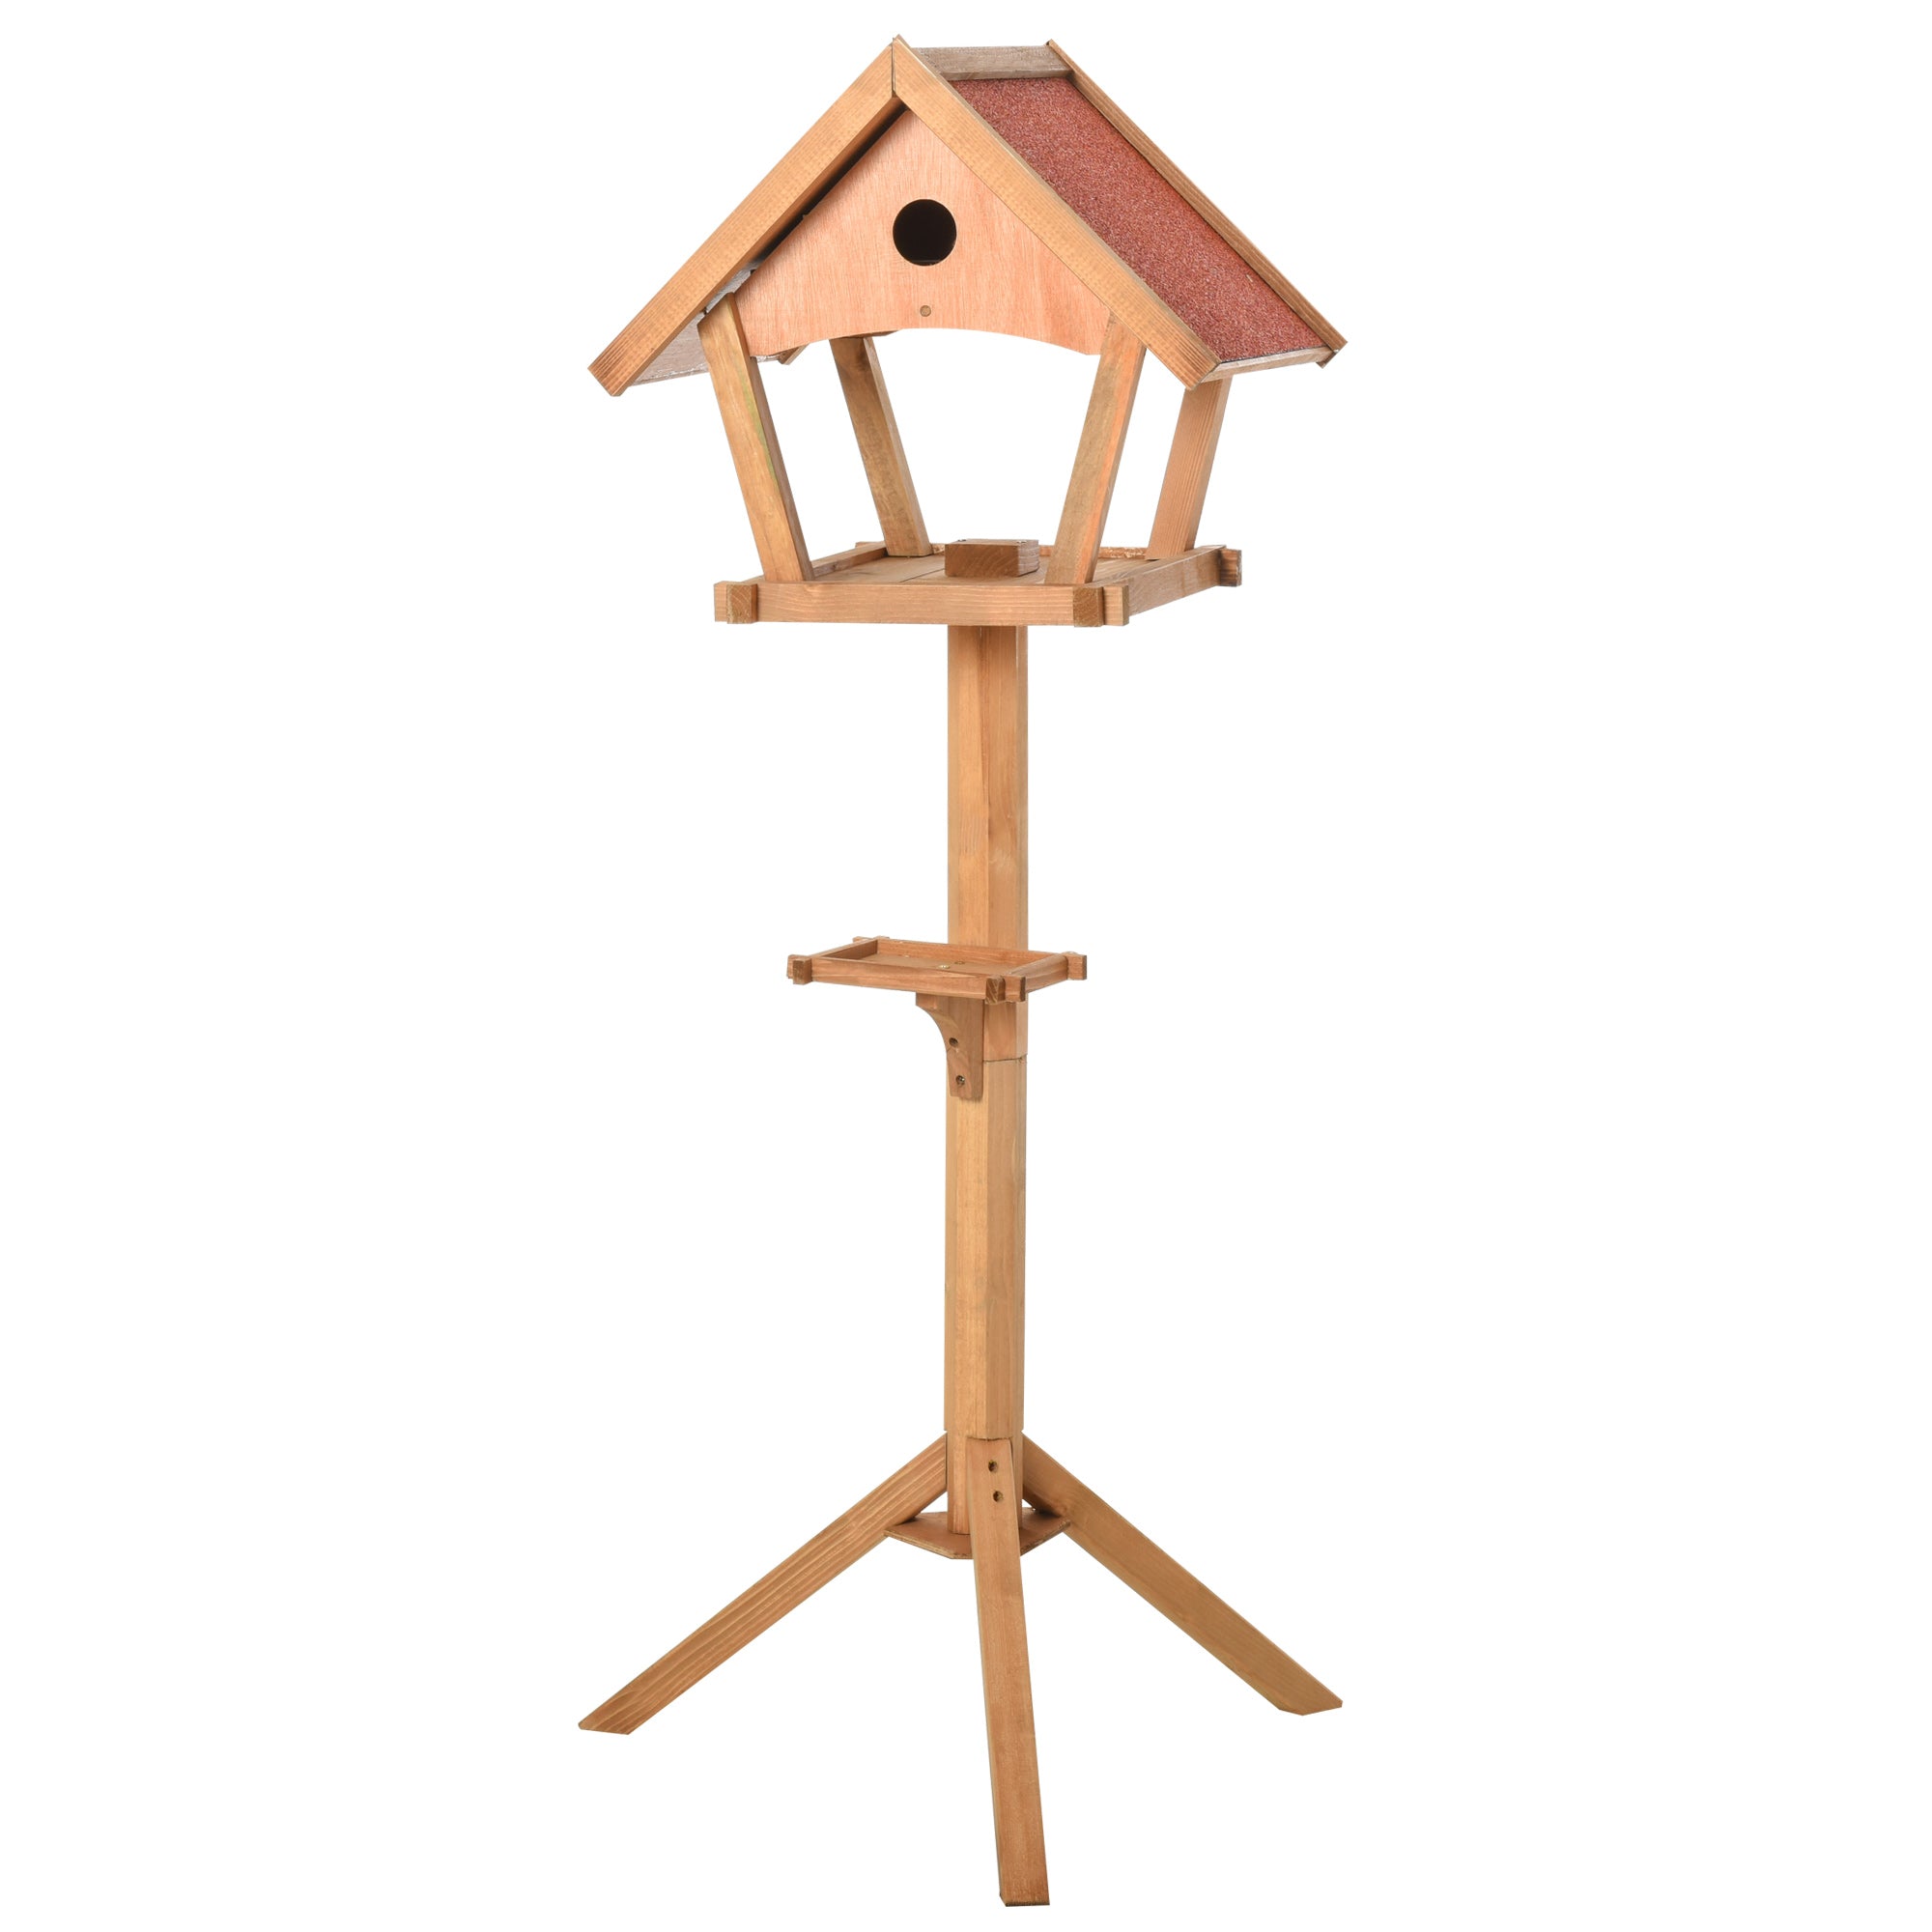 Wooden Garden Bird Feeder Stand - Weatherproof, 49x45x139cm, PawHut,